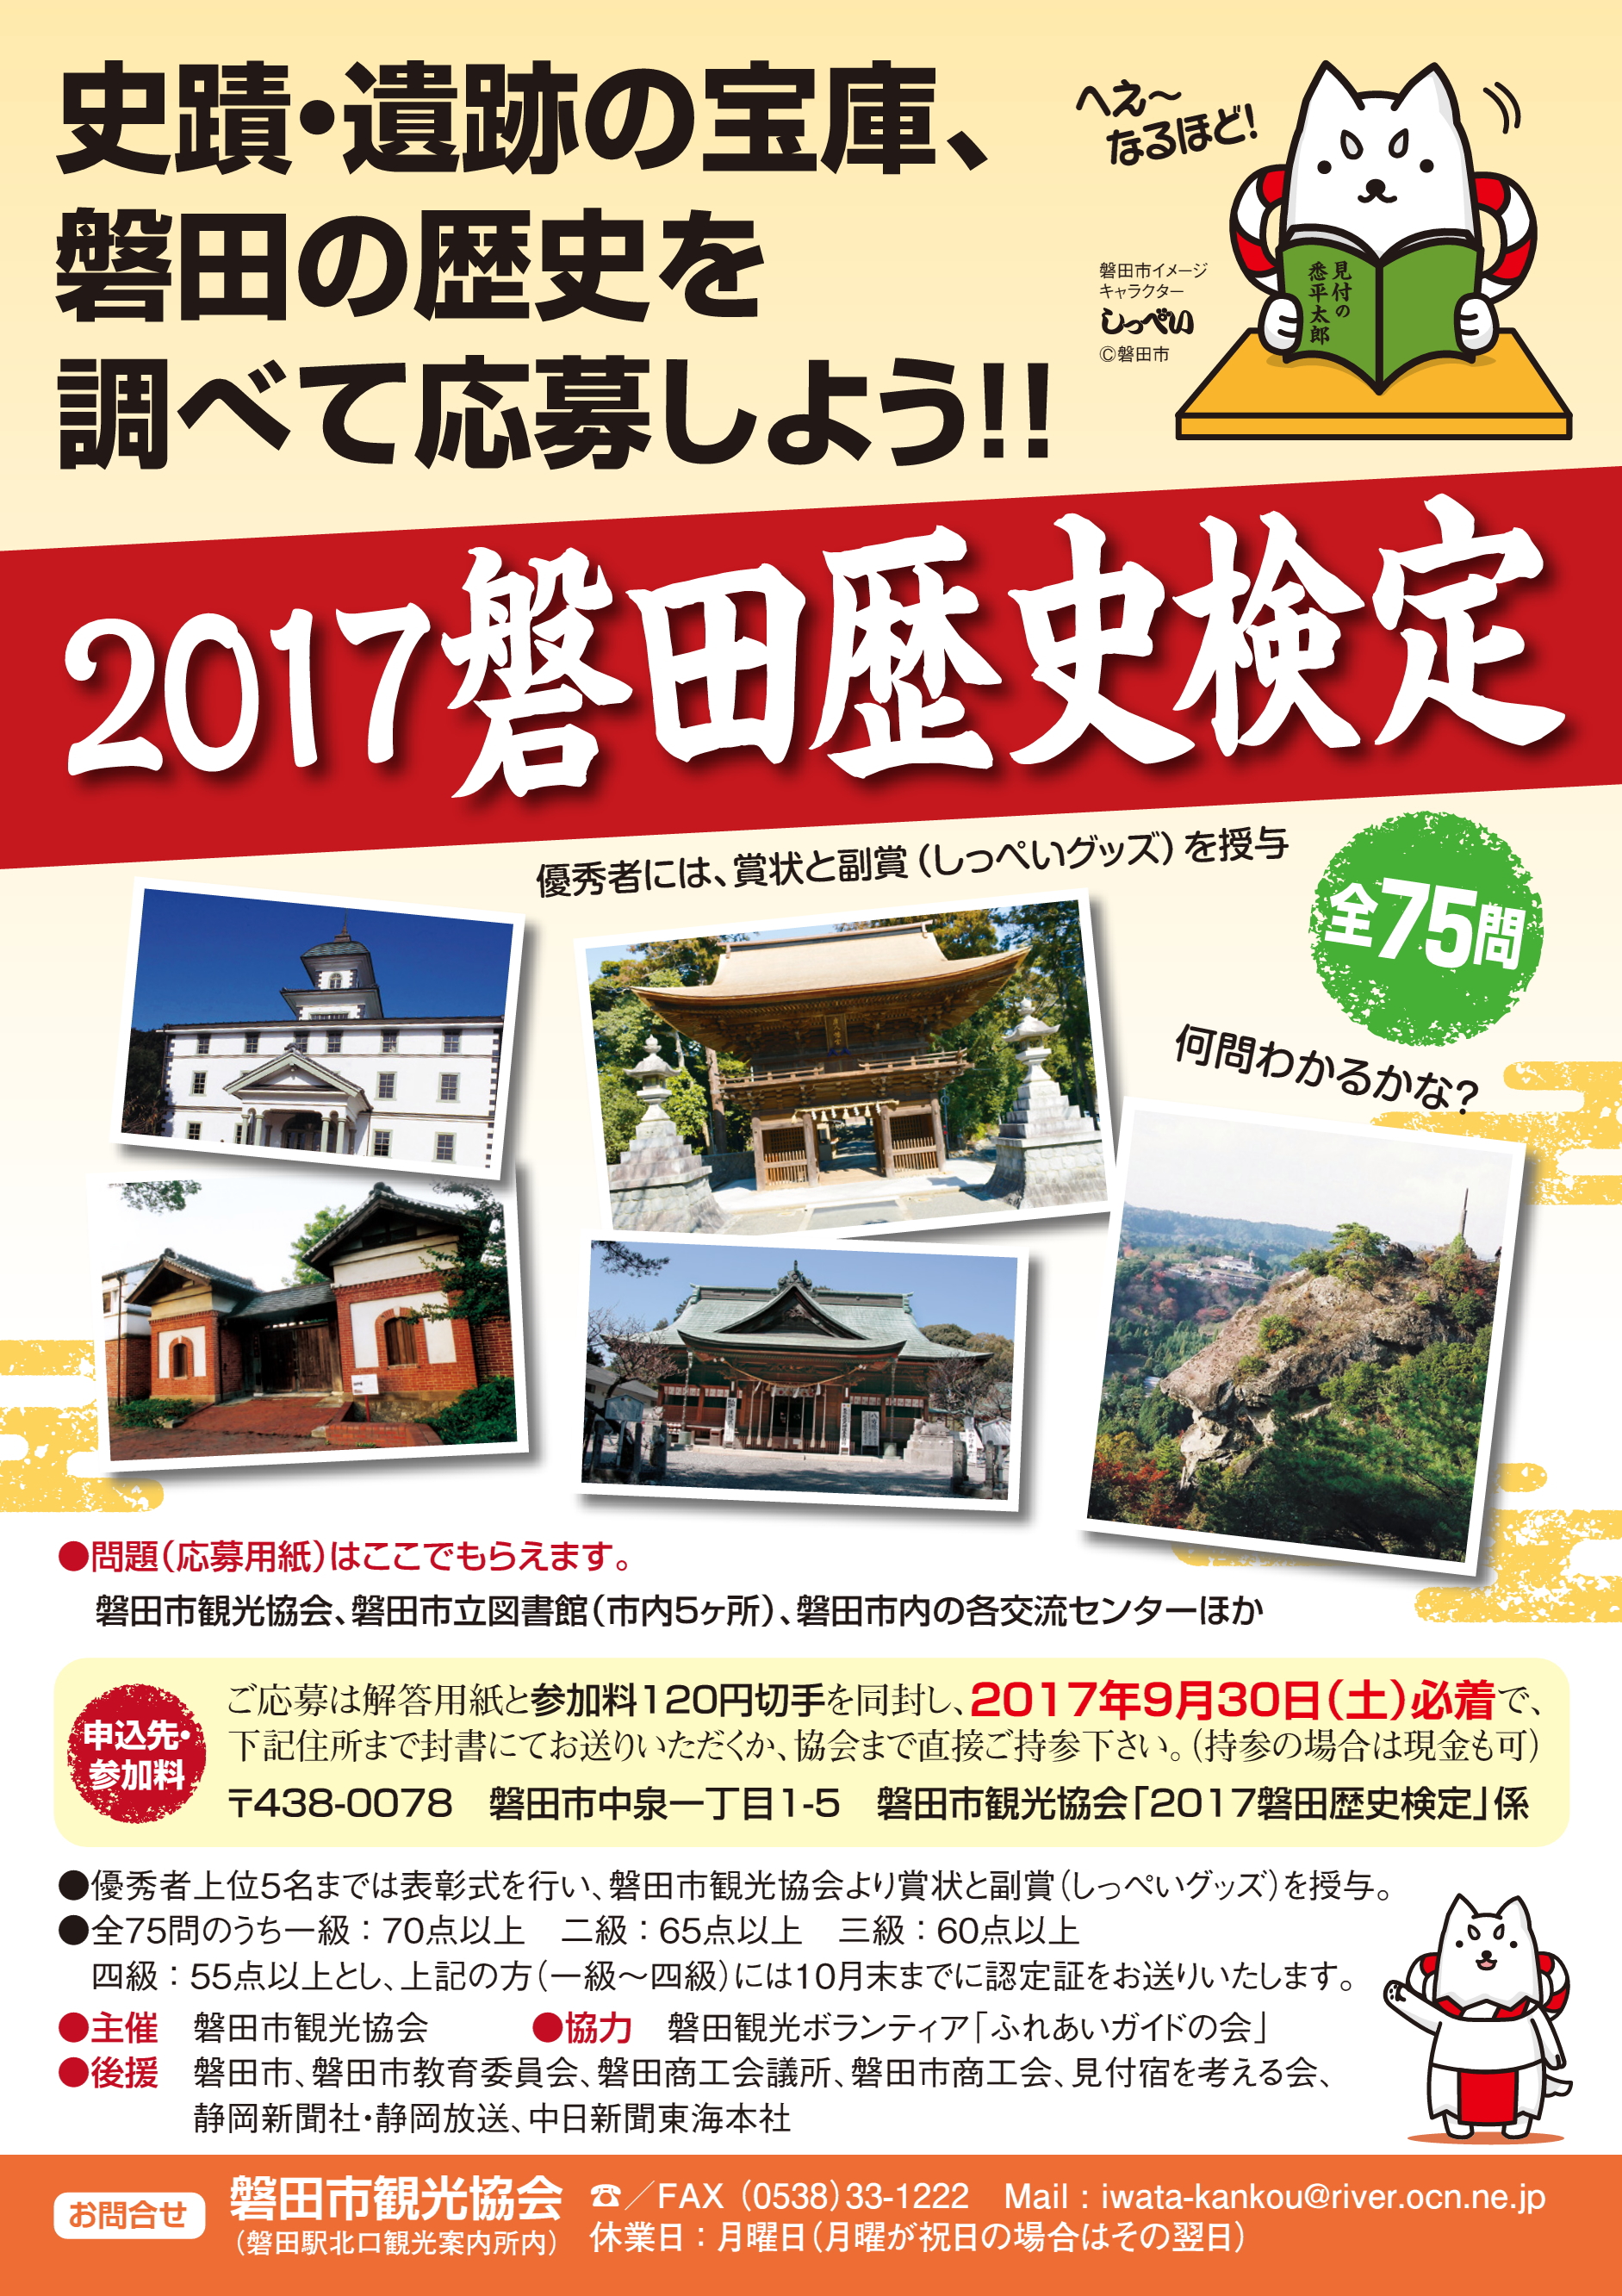 「2017磐田歴史検定」磐田の歴史を調べて応募しよう